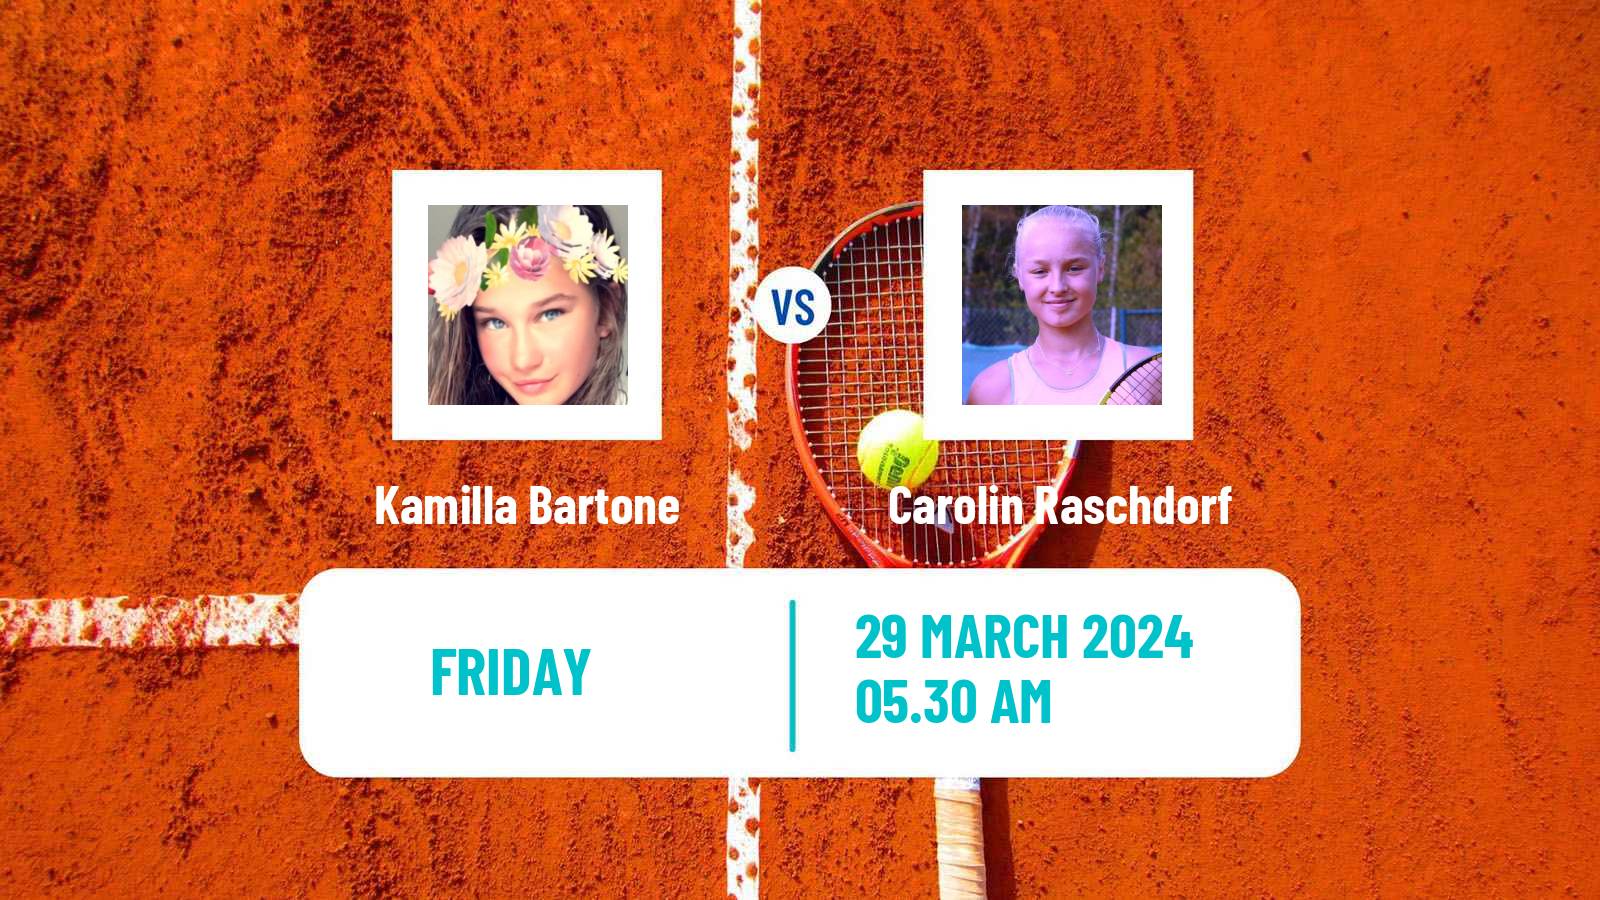 Tennis ITF W15 Antalya 7 Women Kamilla Bartone - Carolin Raschdorf